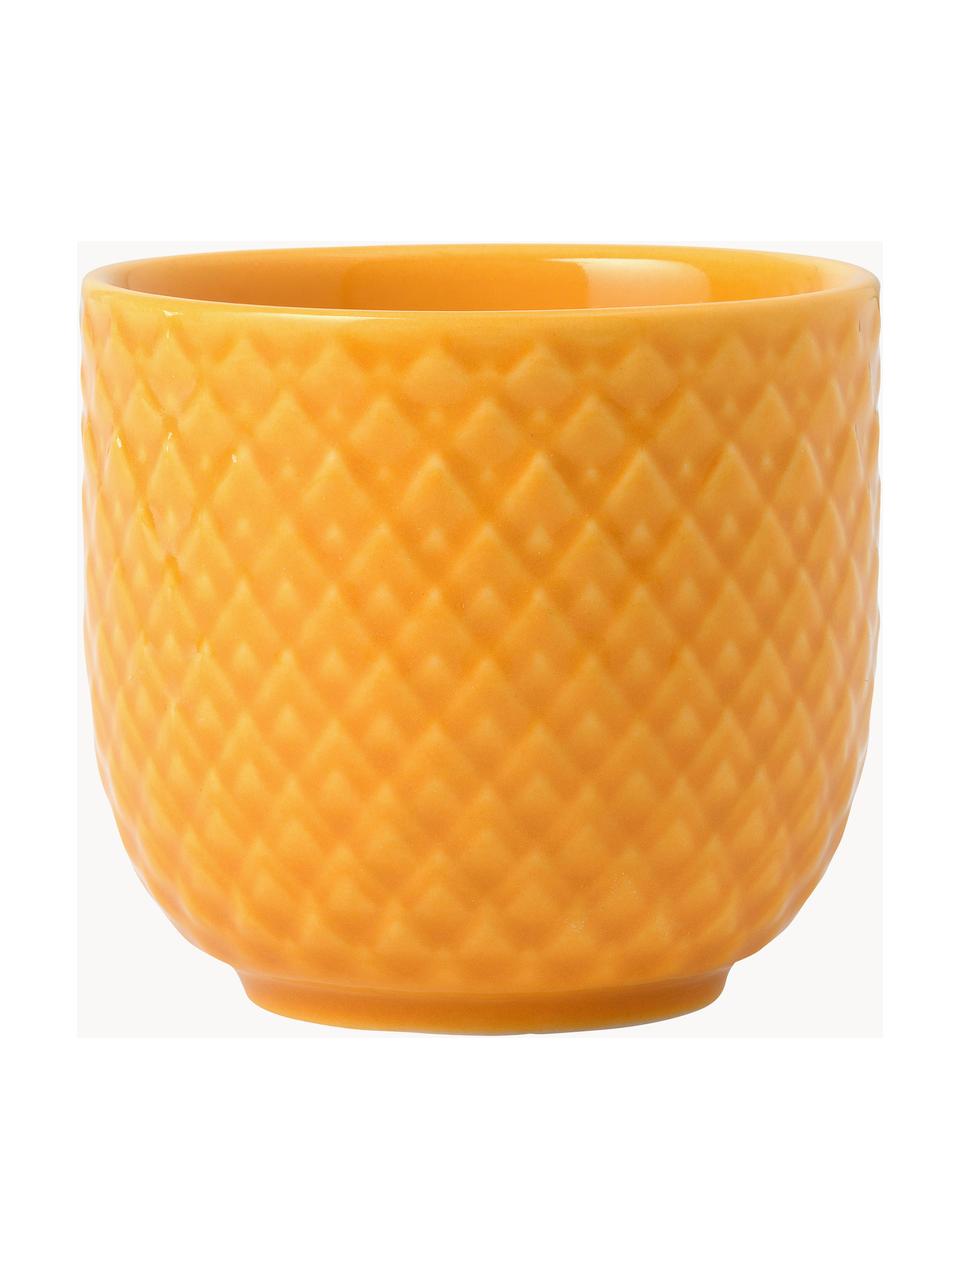 Porzellan-Eierbecher Rhombe mit Struktur-Muster, 4 Stück, Porzellan, Sonnengelb, Ø 5 x H 5 cm